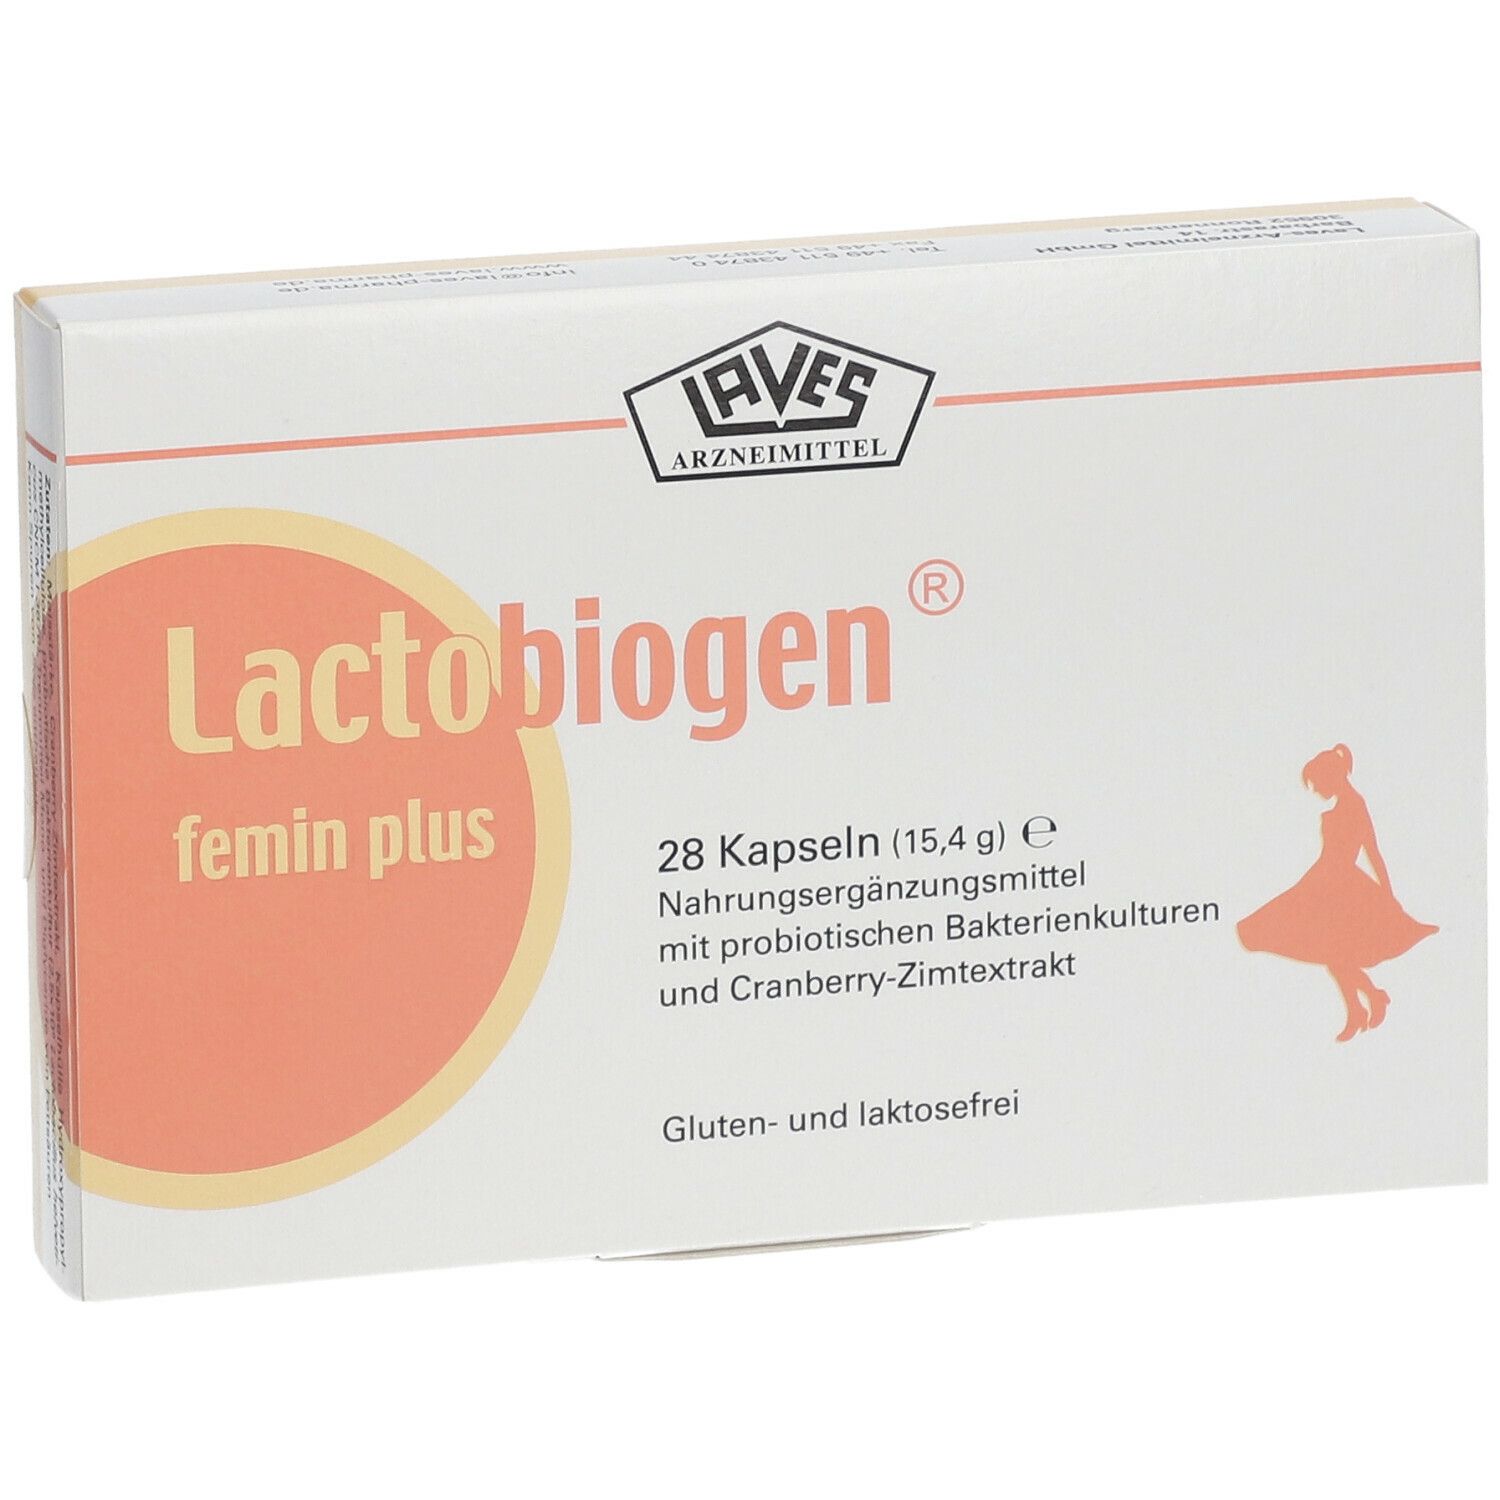 Lactobiogen® feminin plus